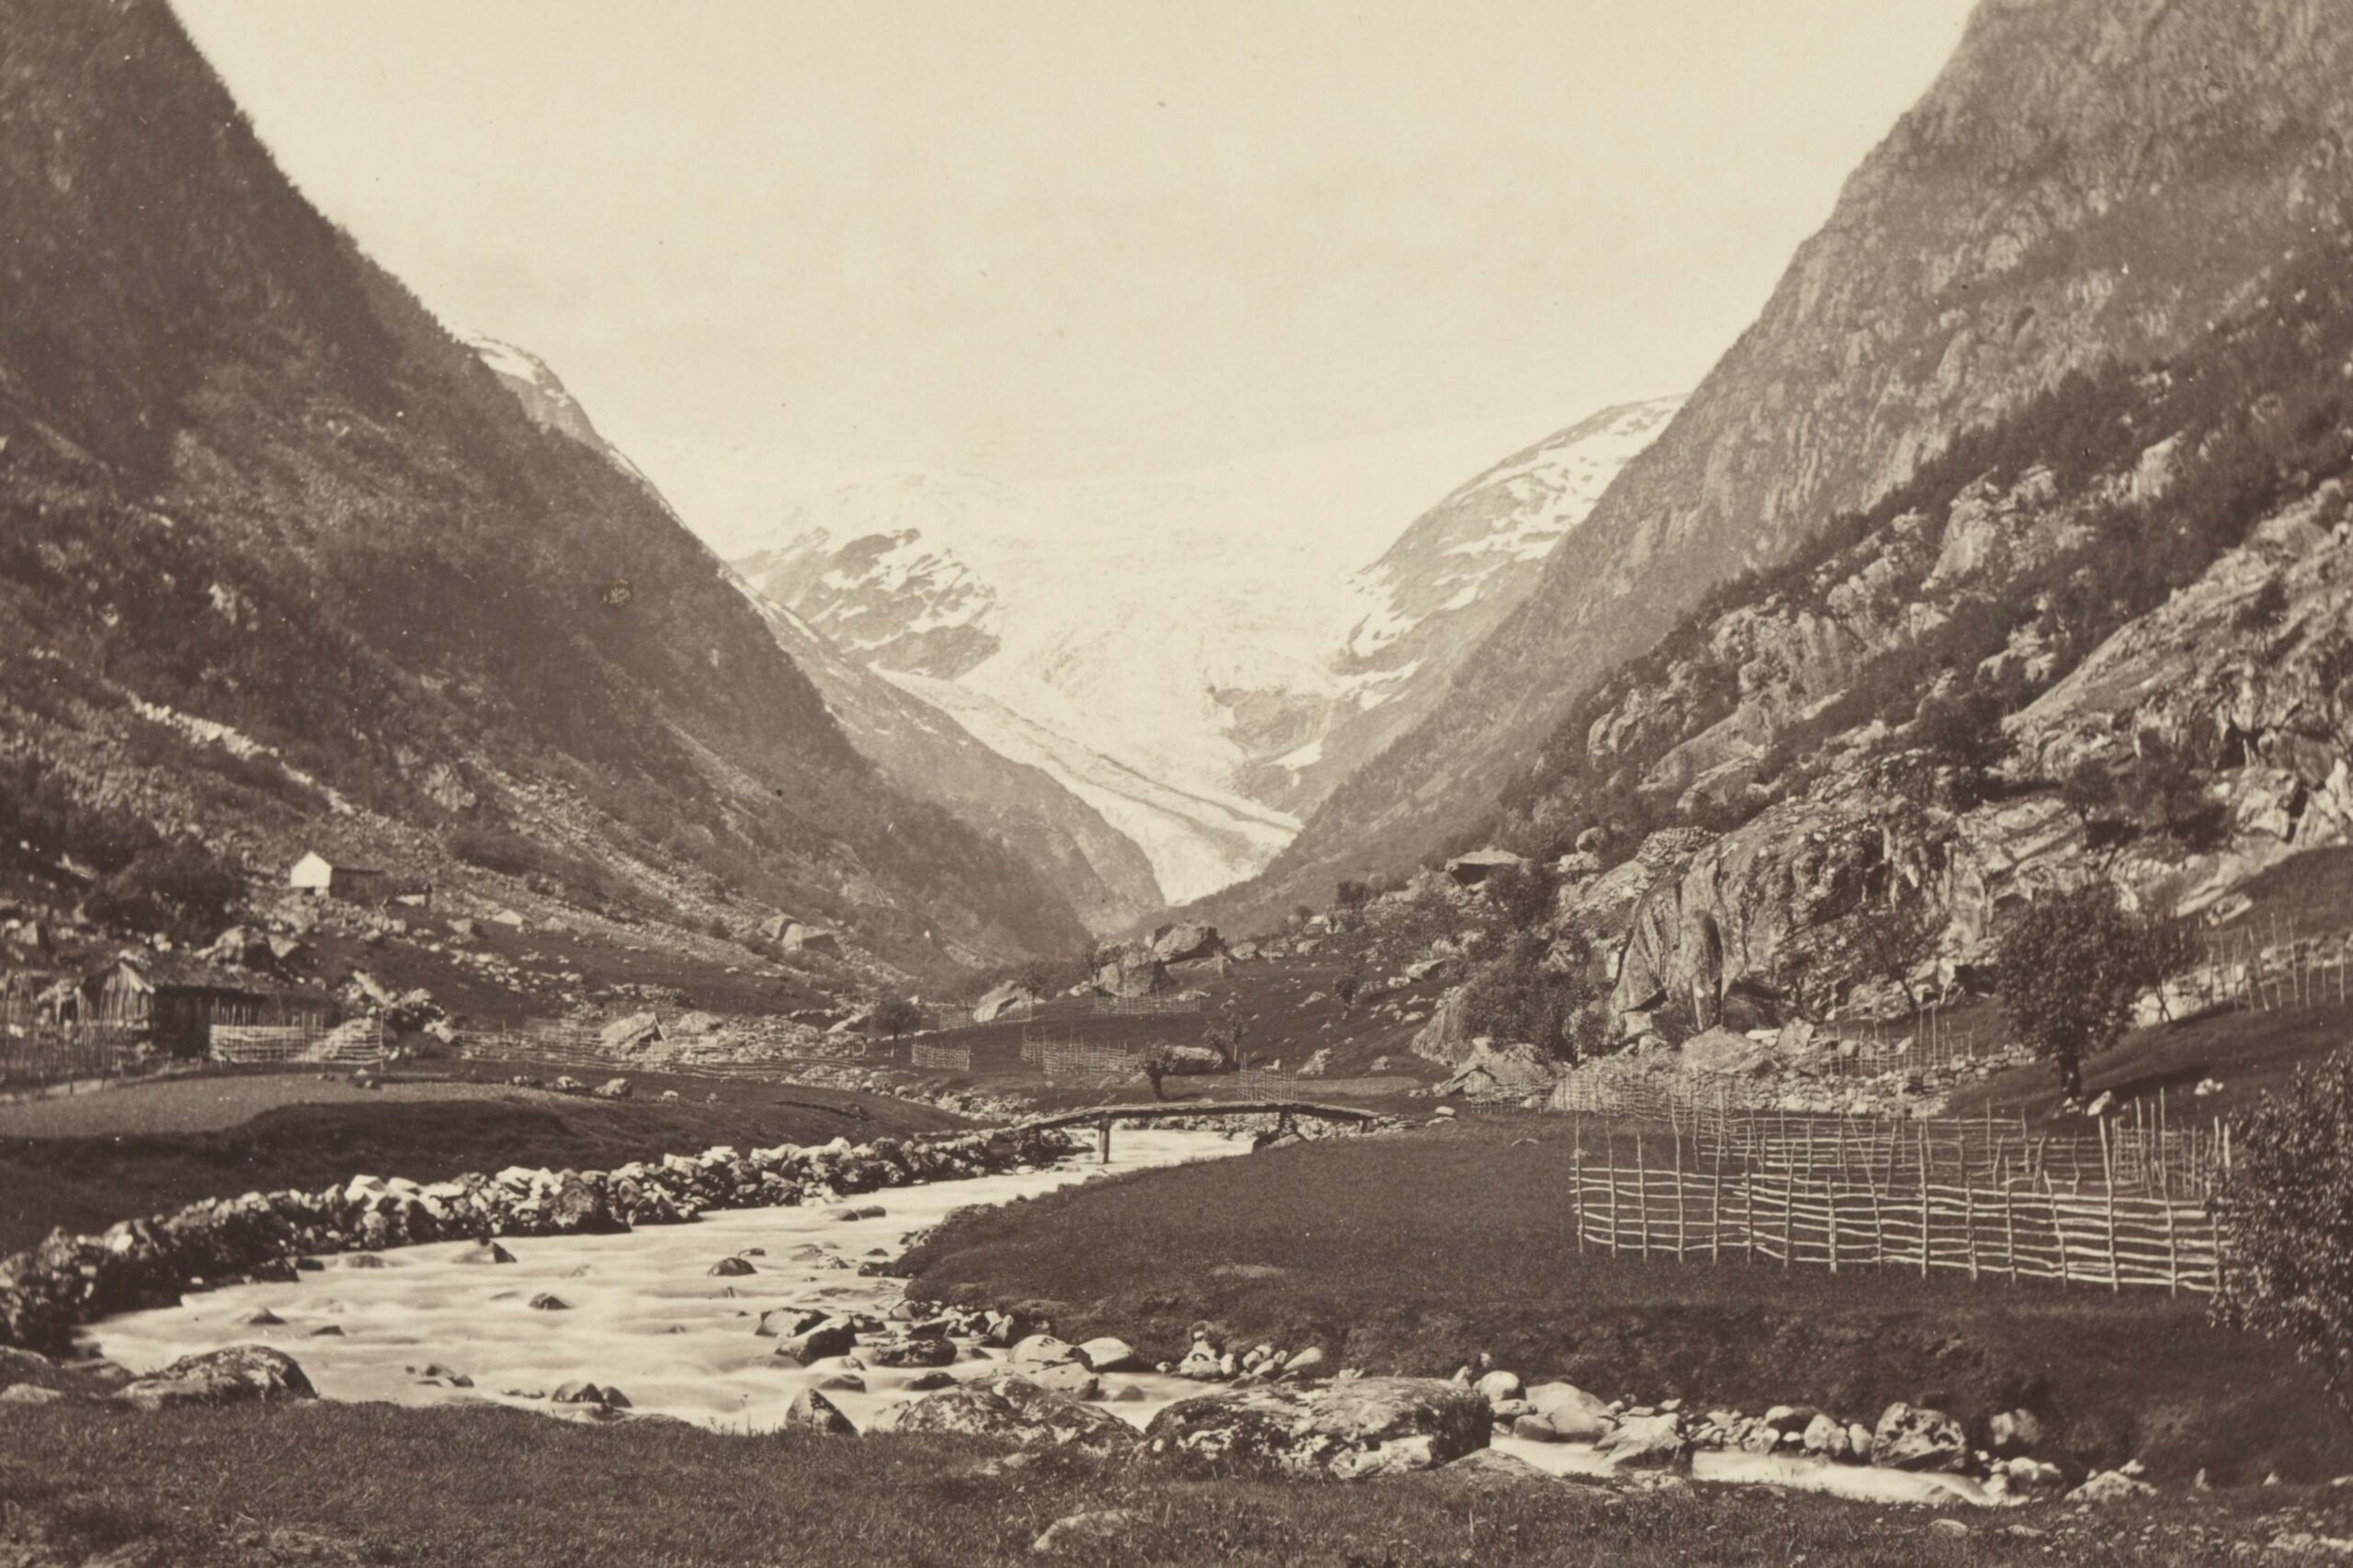 Buerbreen vanuit Jordal zoals door Knud Knudsen gezien (links) en in 2021 (rechts). Bron: Nationale Bibliotheek Noorwegen.